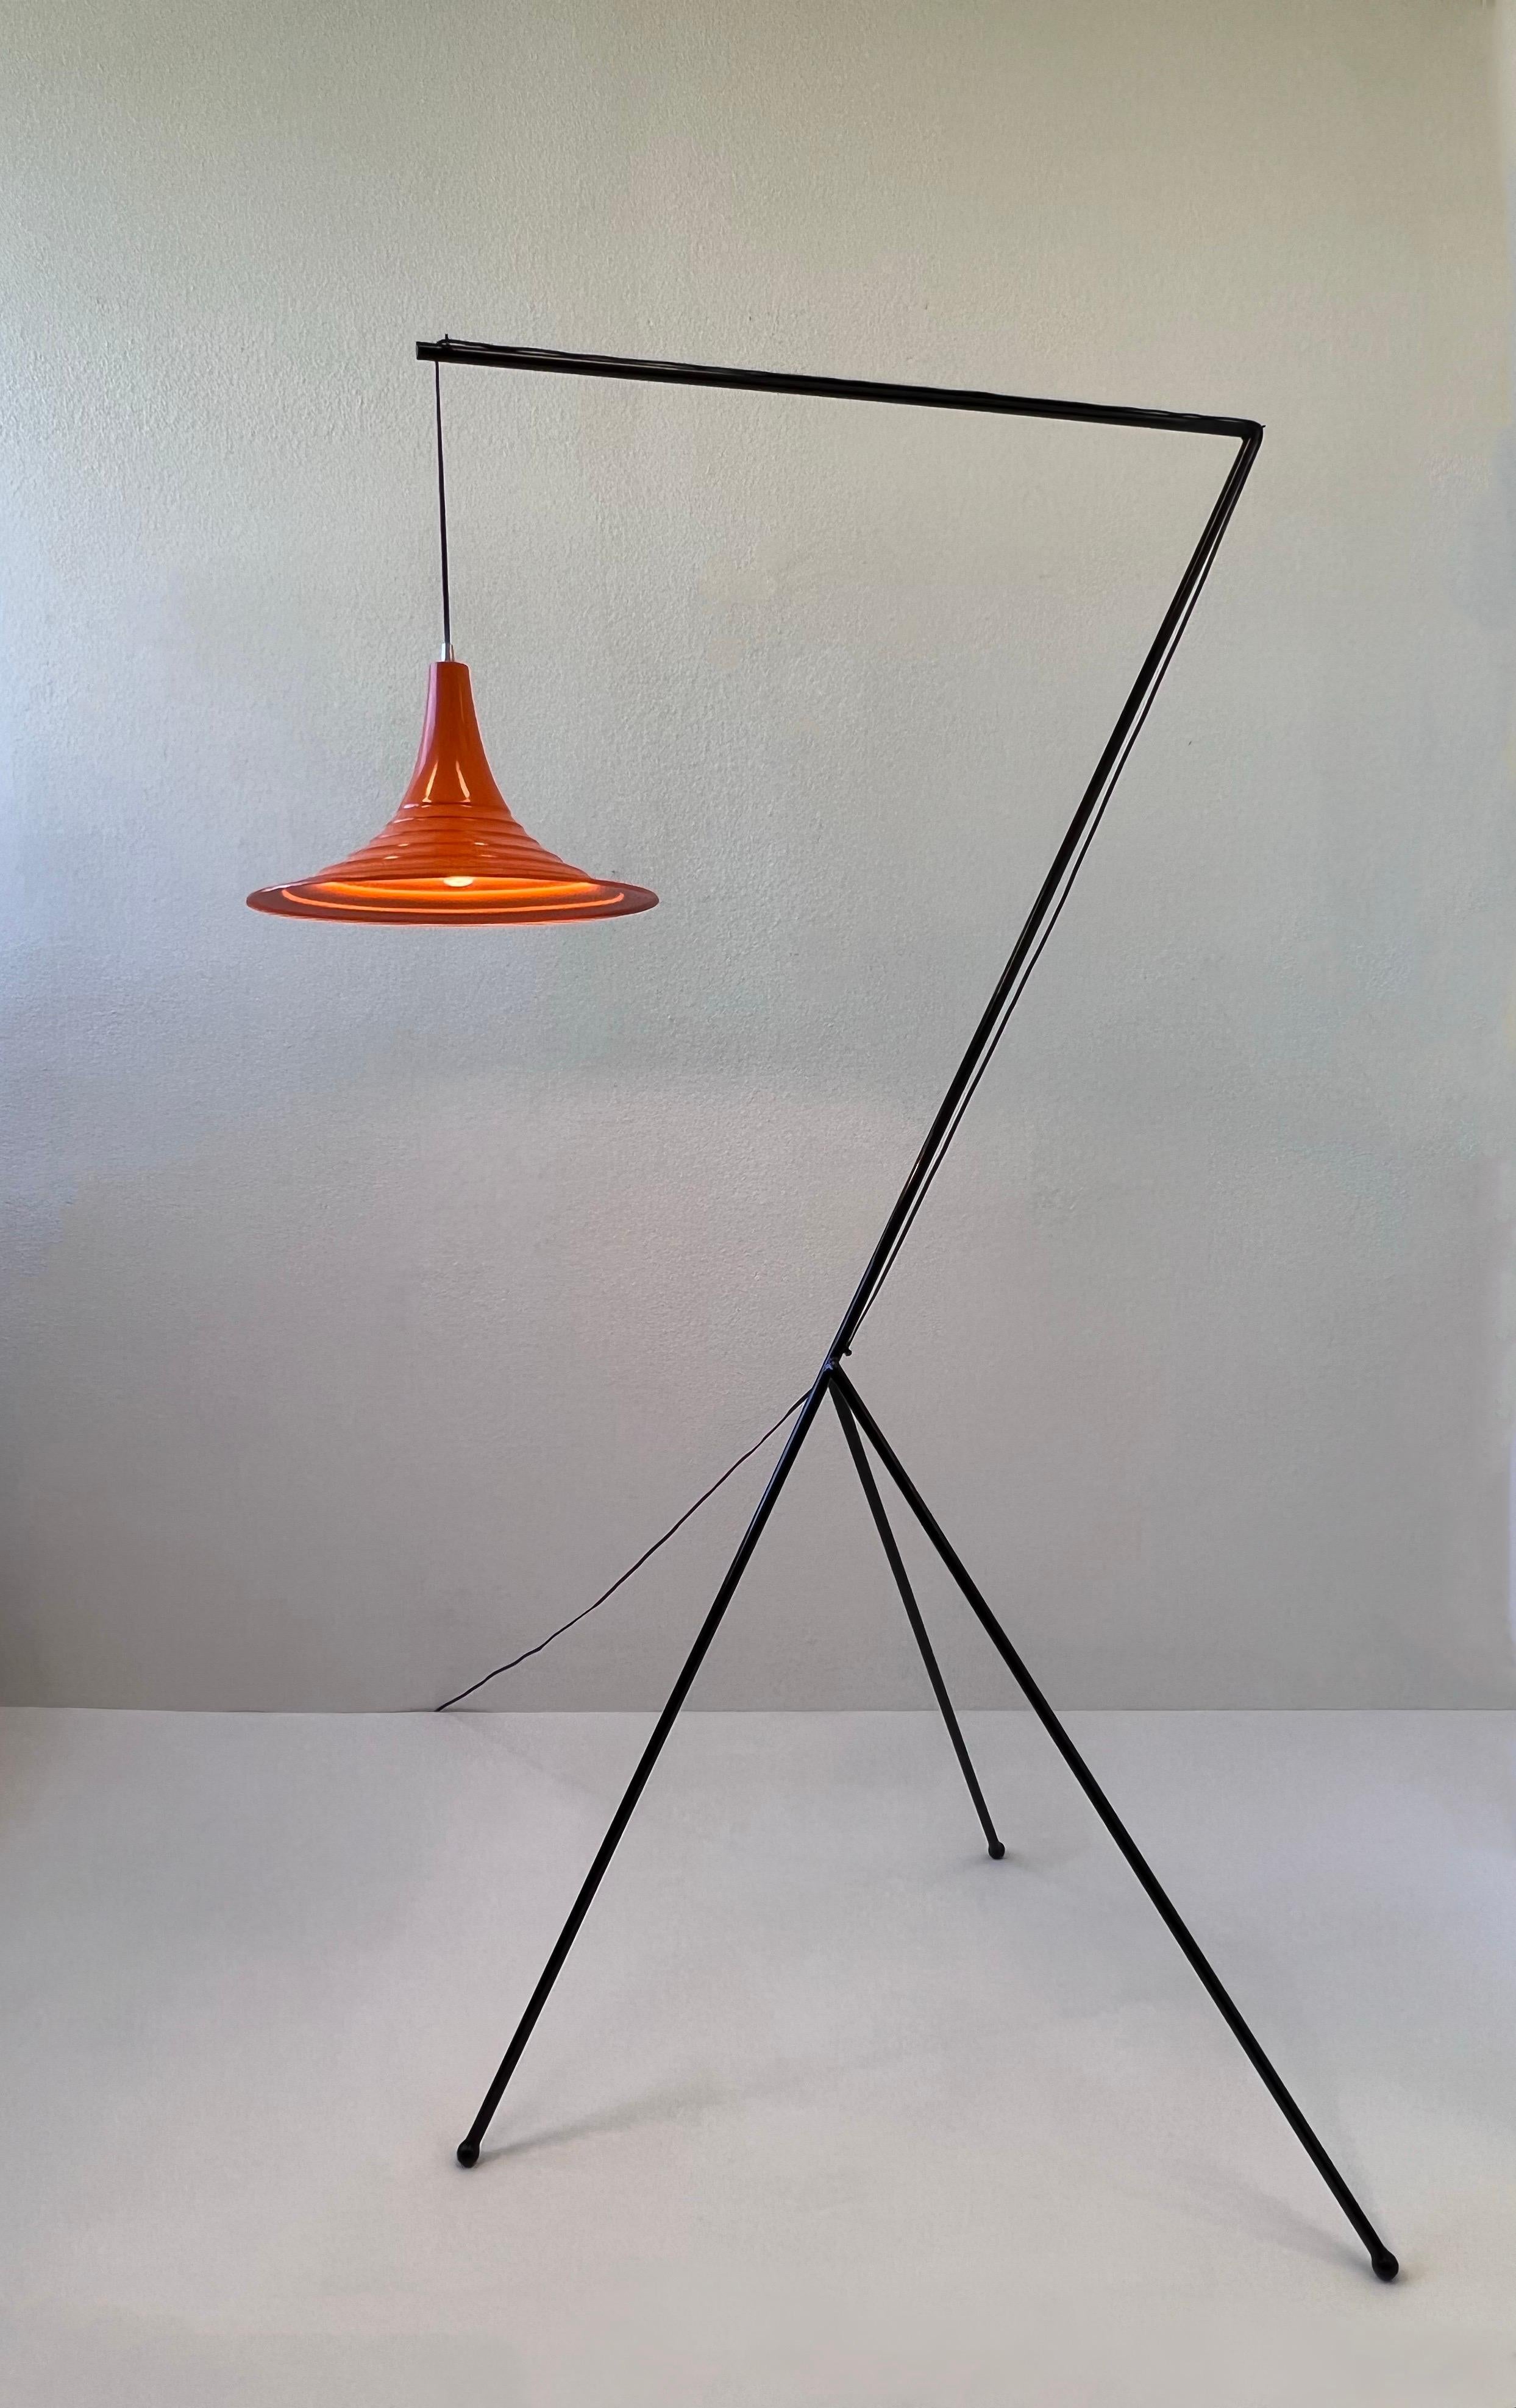 Magnifique lampadaire tripode de style Mid-Century Modern, noir et orange, peint par poudrage. 

Nouveau revêtement en poudre et nouveau câblage. Elle fonctionne avec une ampoule Edison de 100w Max.
Présente une légère usure due à l'âge. 
